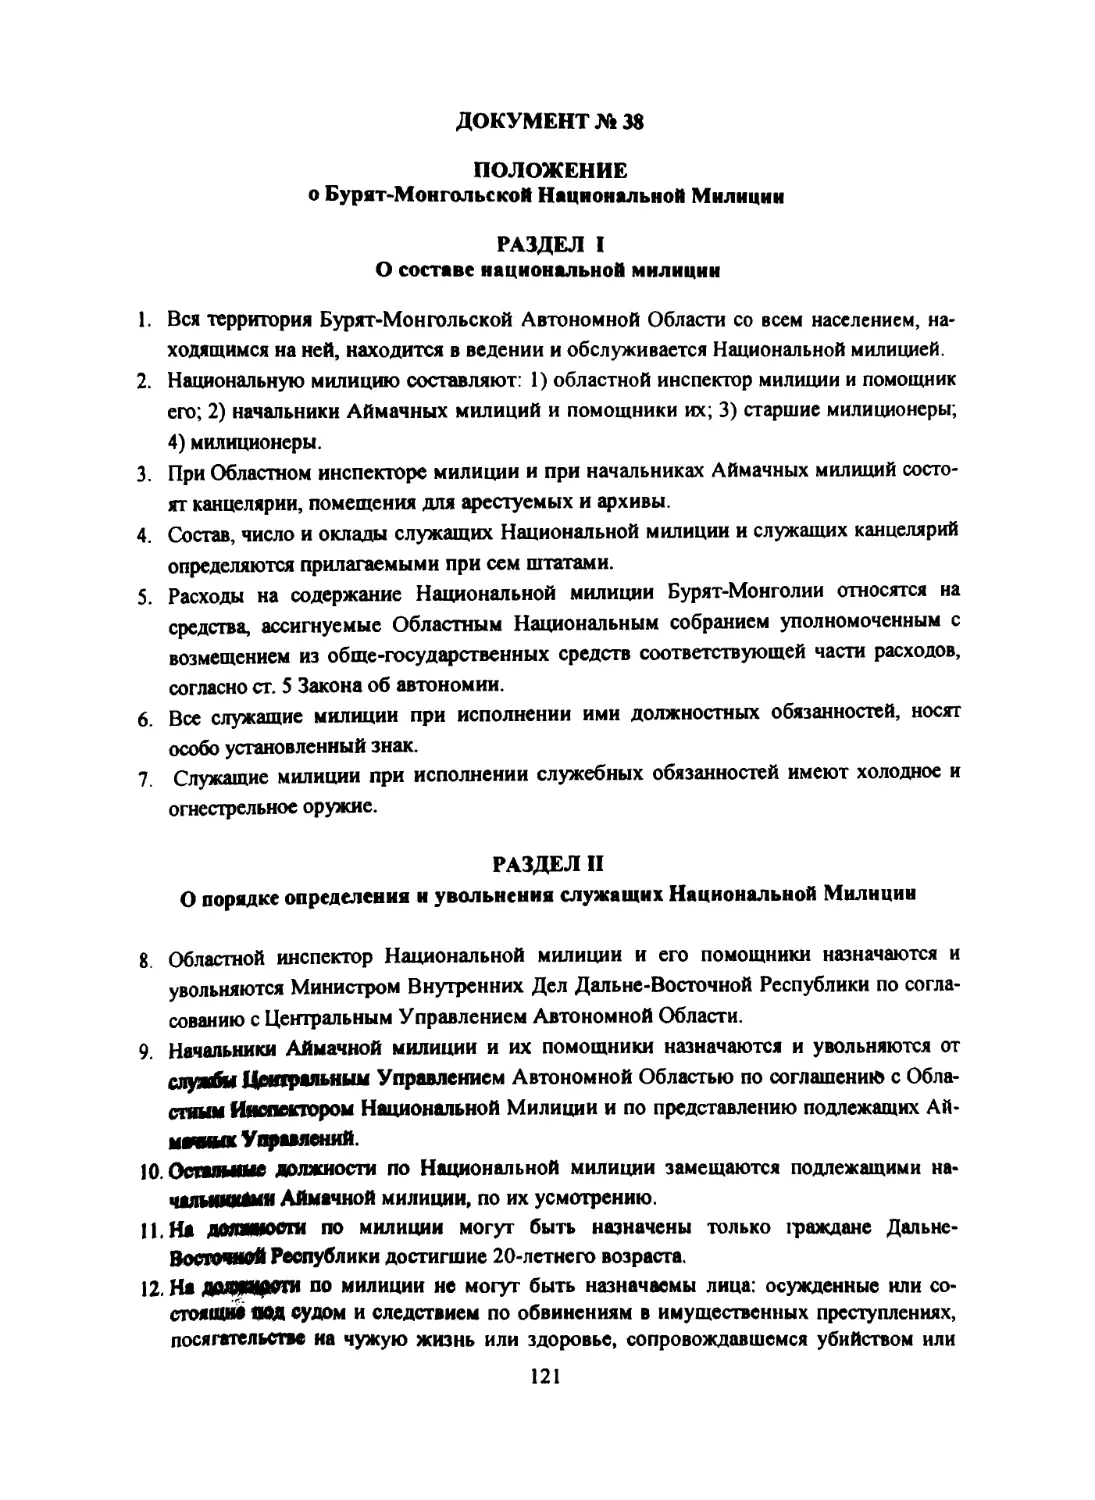 Документ № 38 Положение о Бурят-Монгольской Национальной Милиции